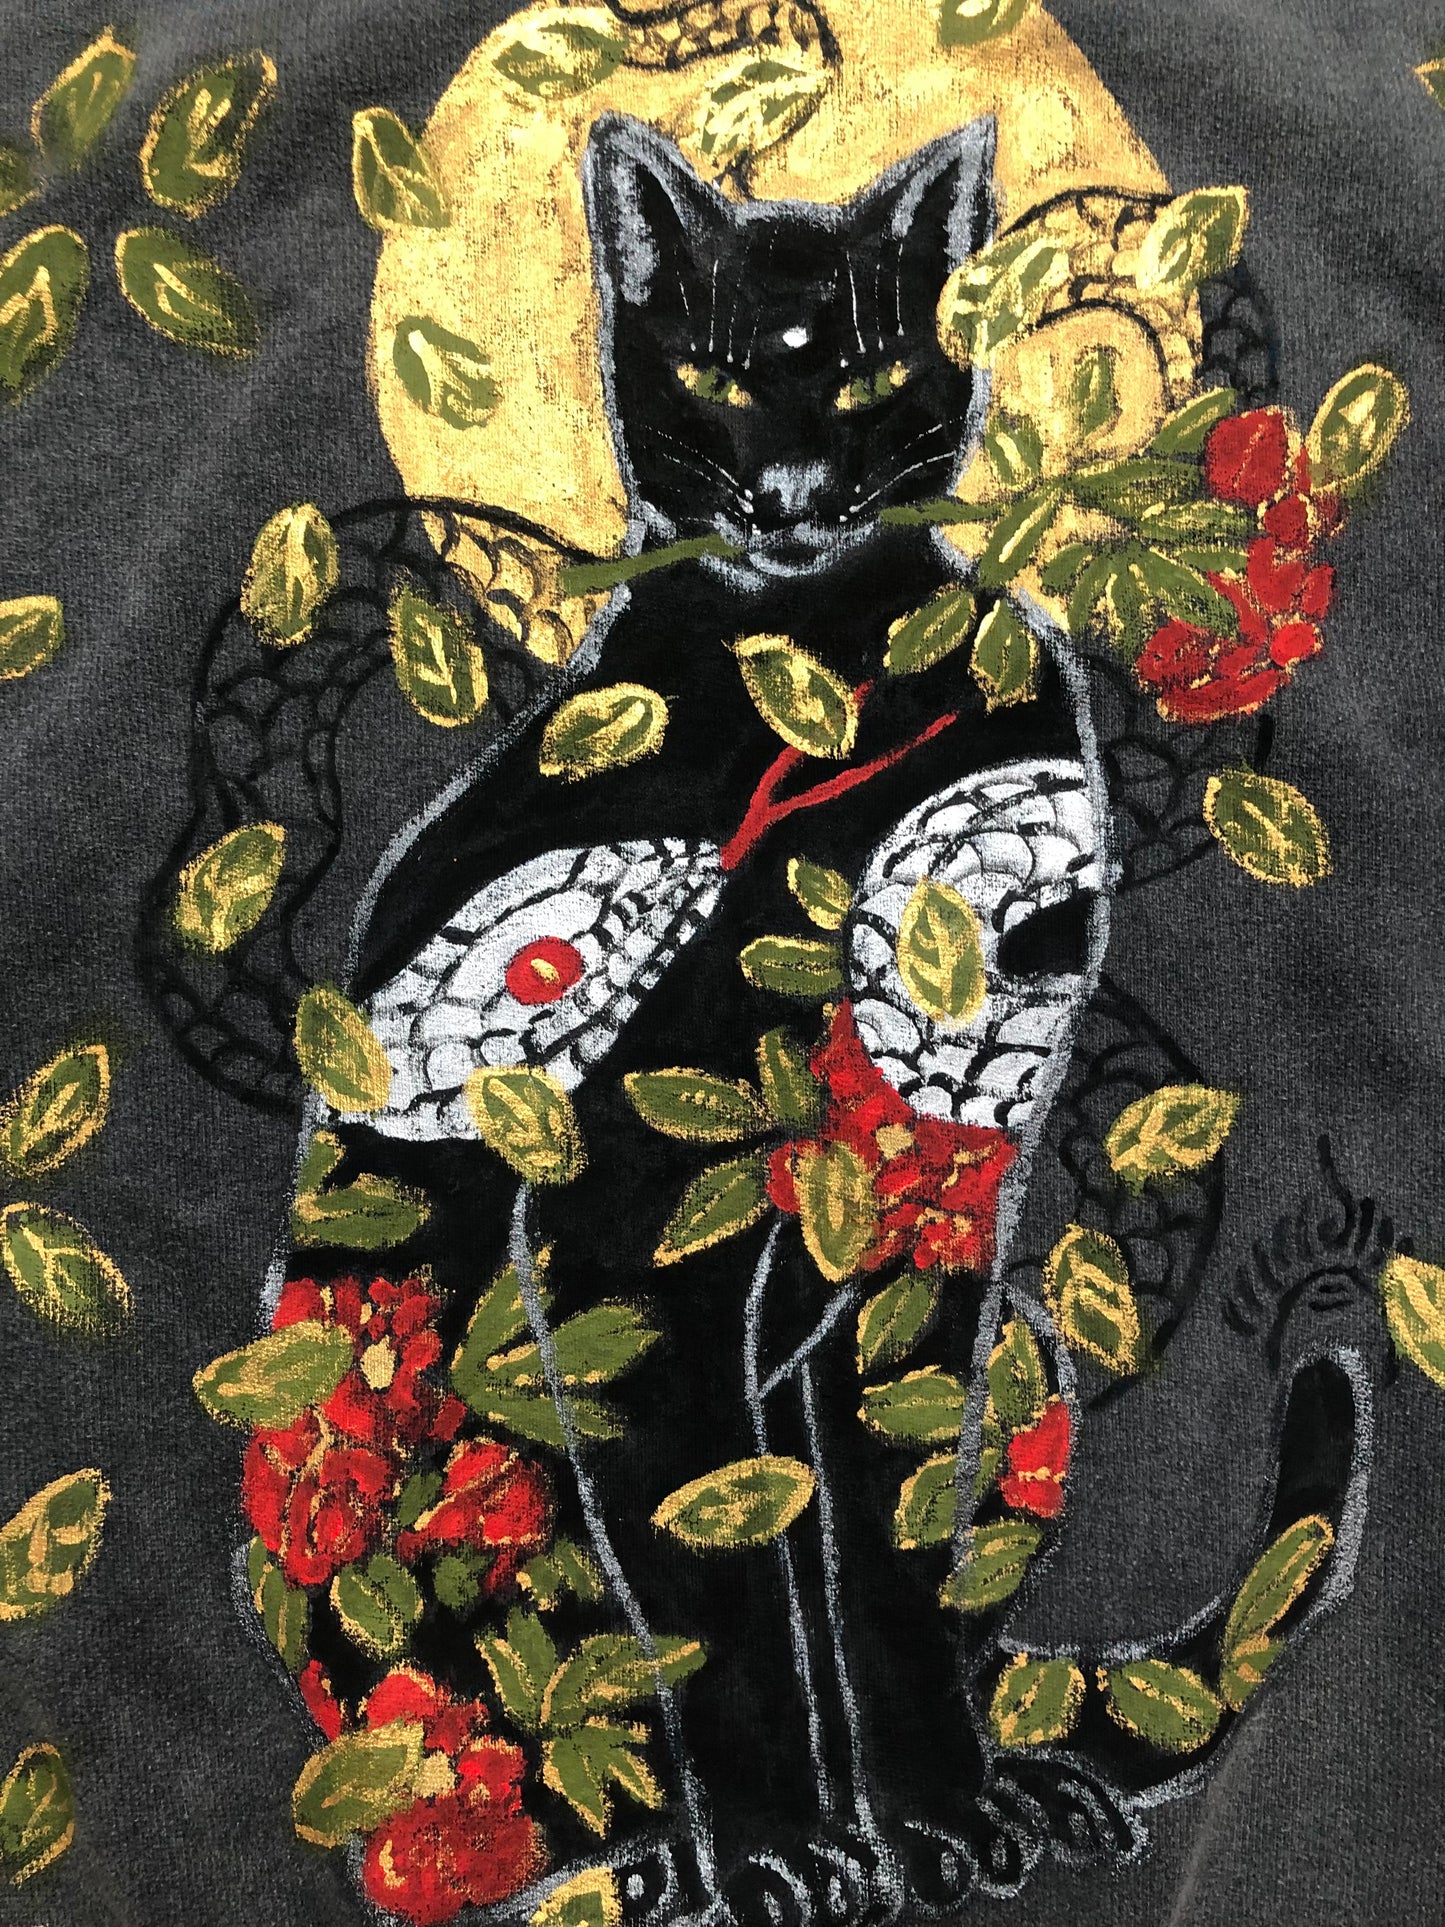 Women's sweatshirt oversized cat and elephants pattern details reverse side